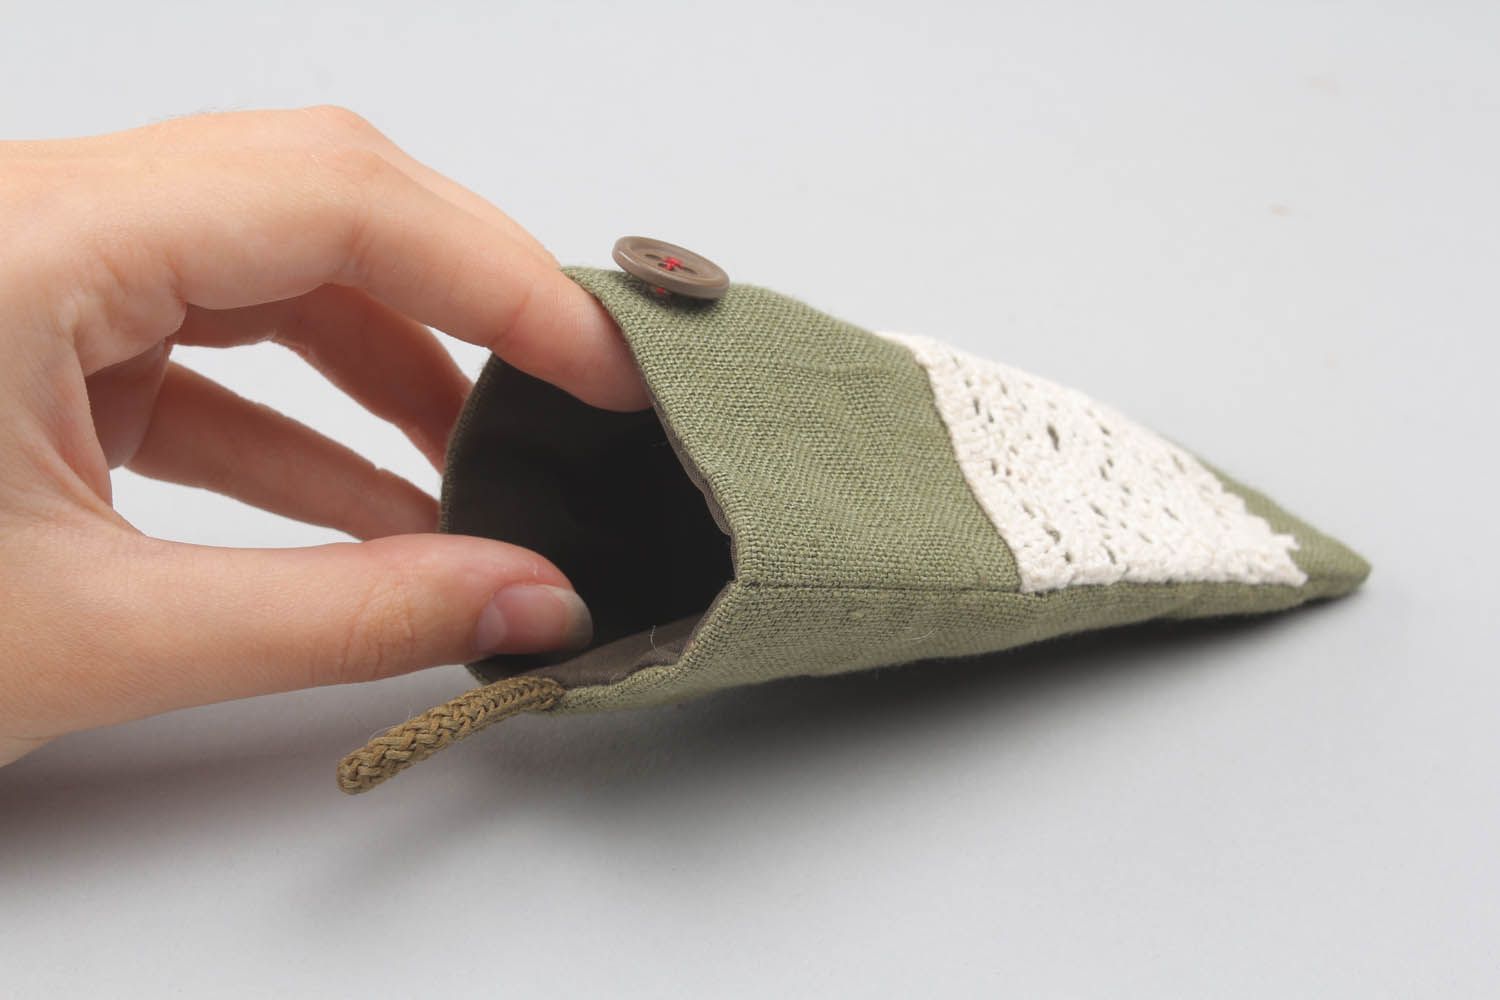 Housse-chaussette pour téléphone en tissu vert faite main photo 1